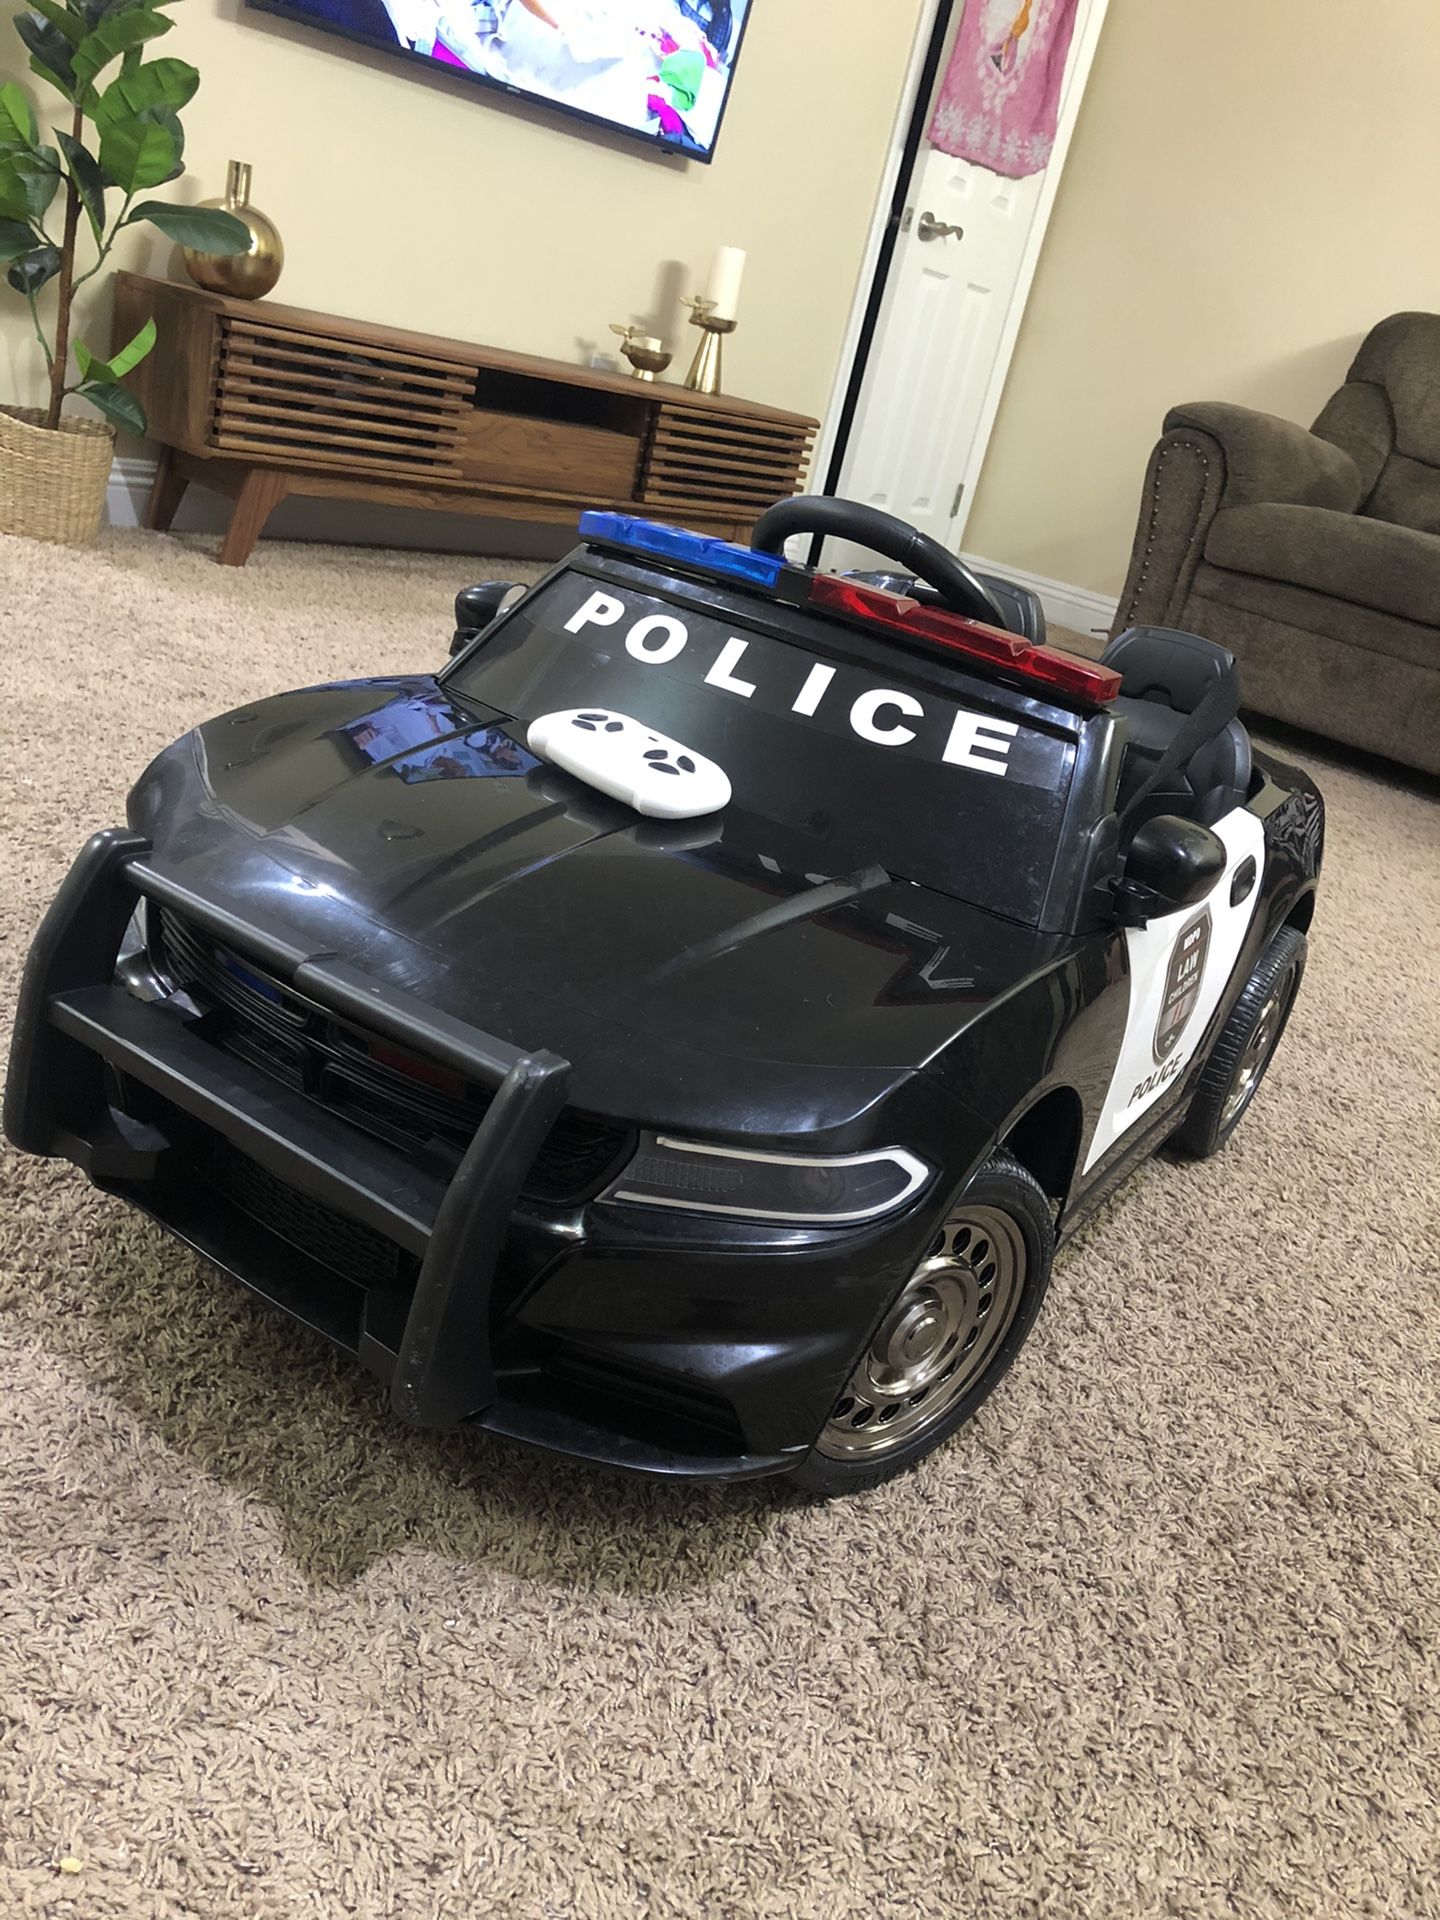 Kids police car